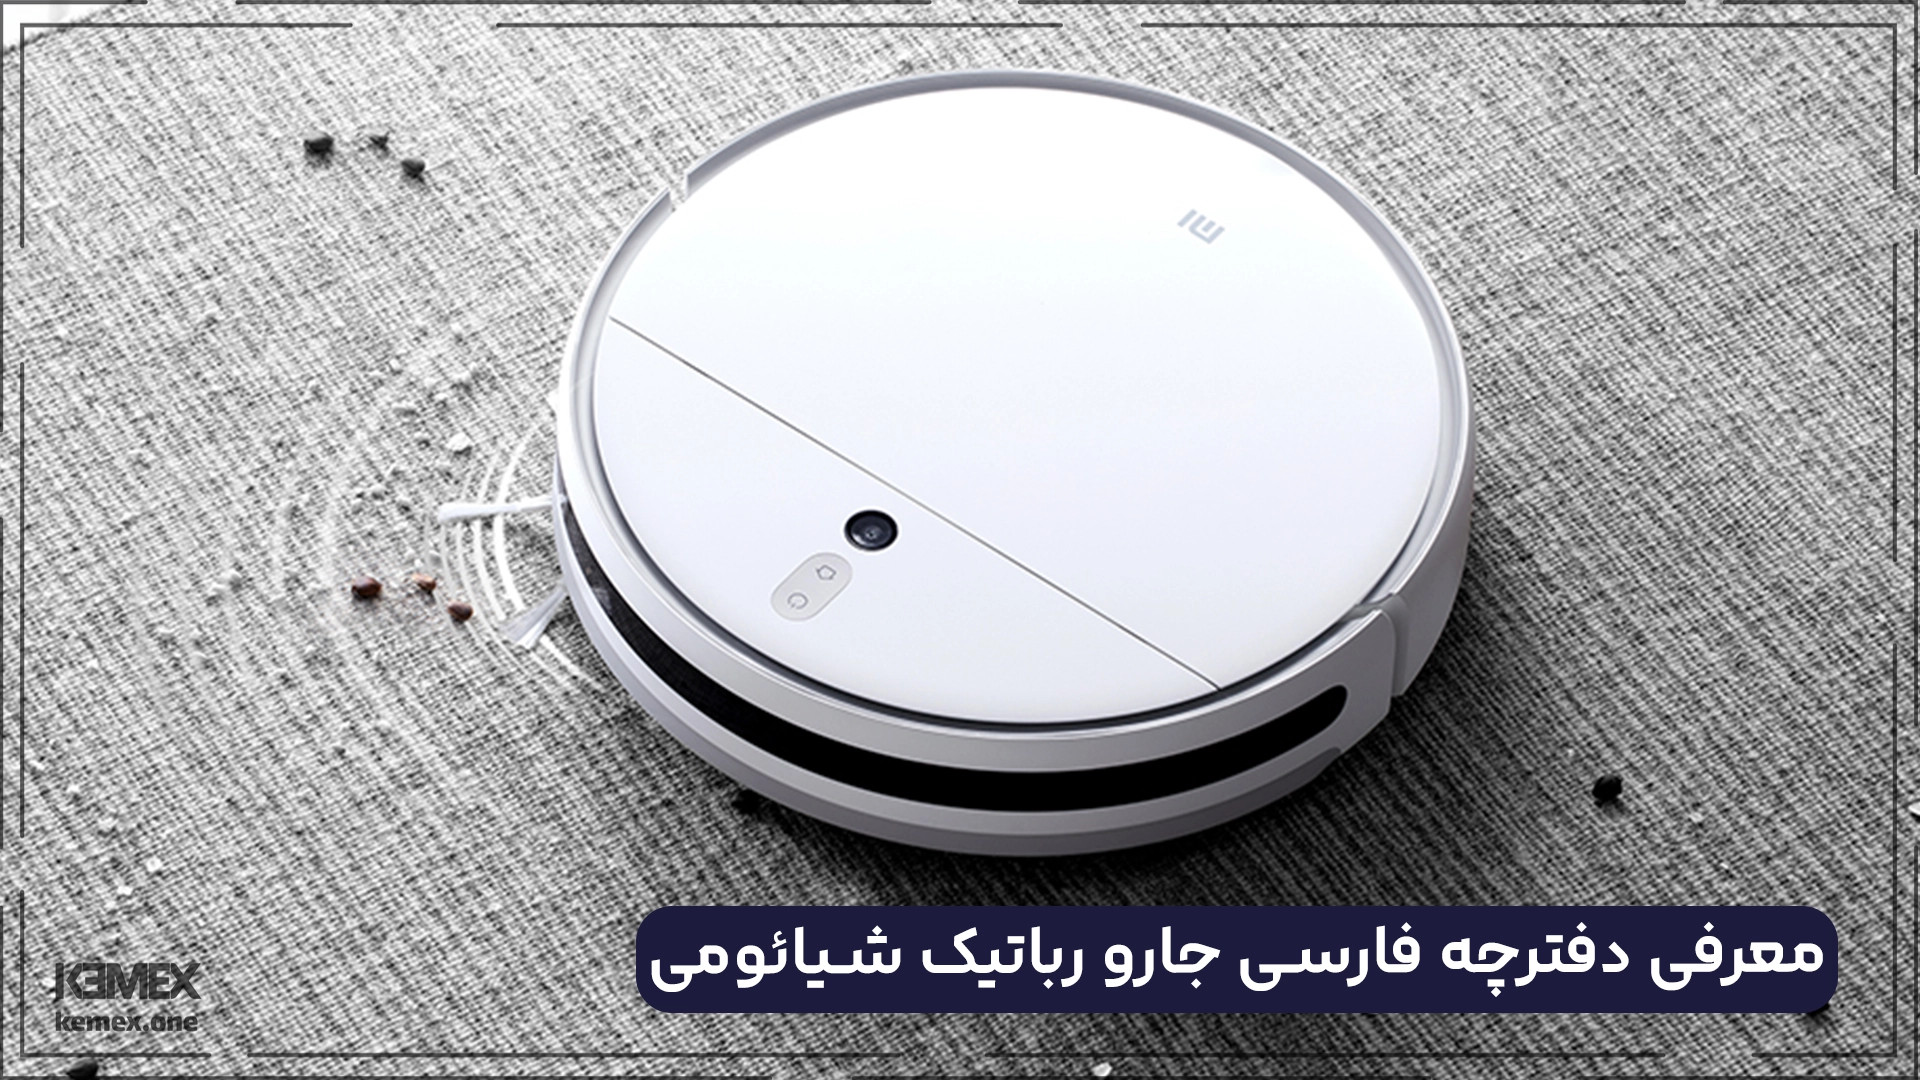 معرفی دفترچه فارسی جارو رباتیک شیائومی